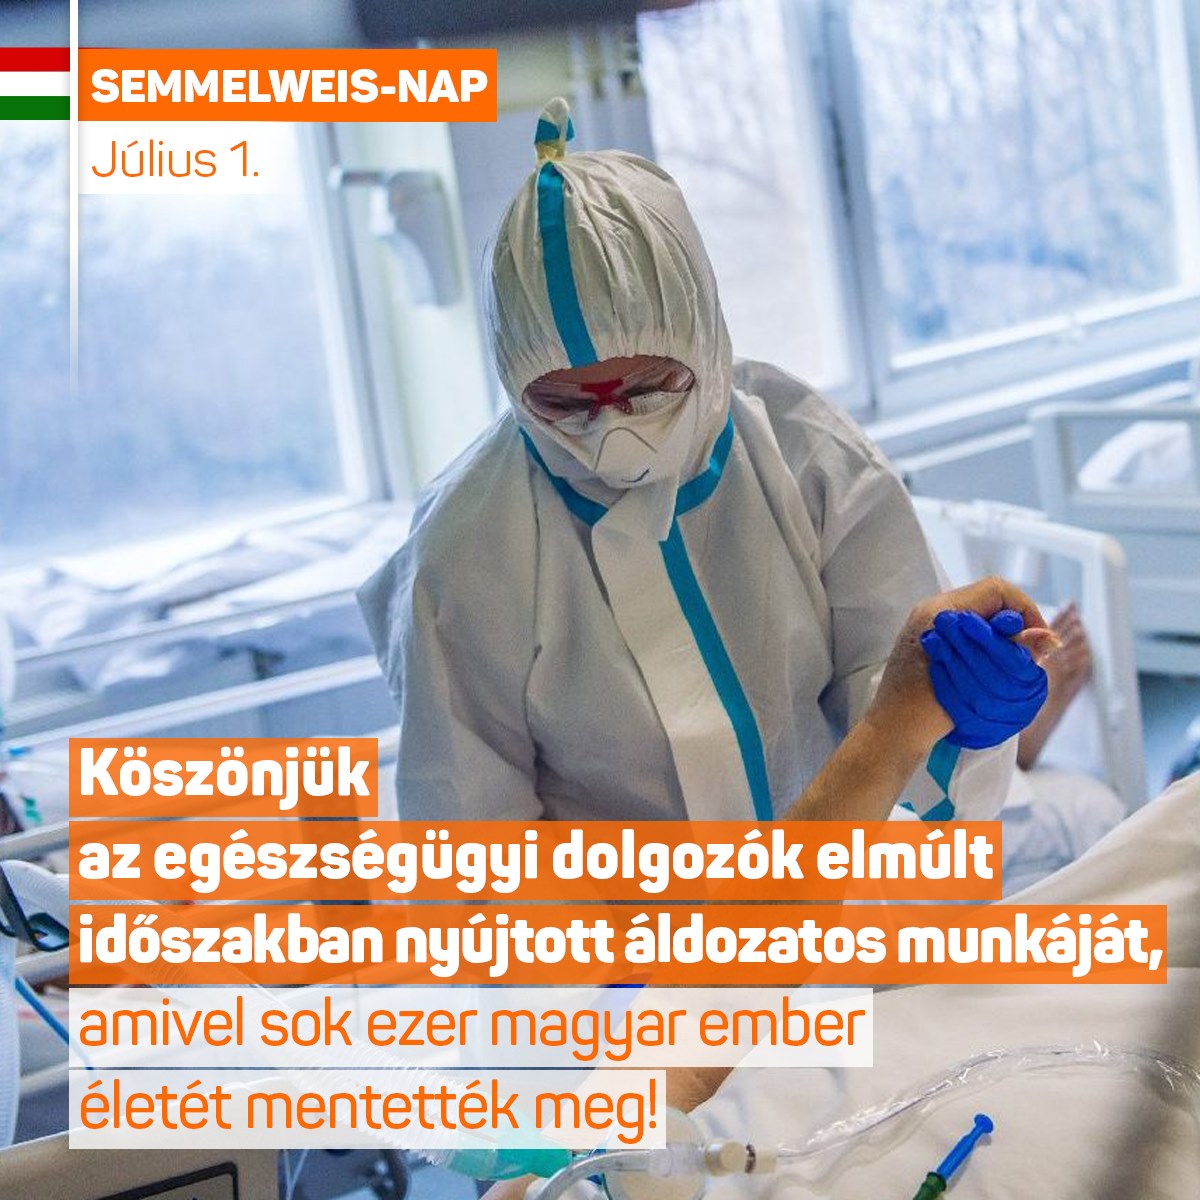 Ma van a Semmelweis-nap. Köszönjük az egészségügyi dolgozók elmúlt időszakban nyújtott áldozatos munkáját, amivel sok ezer magyar ember életét mentették meg!